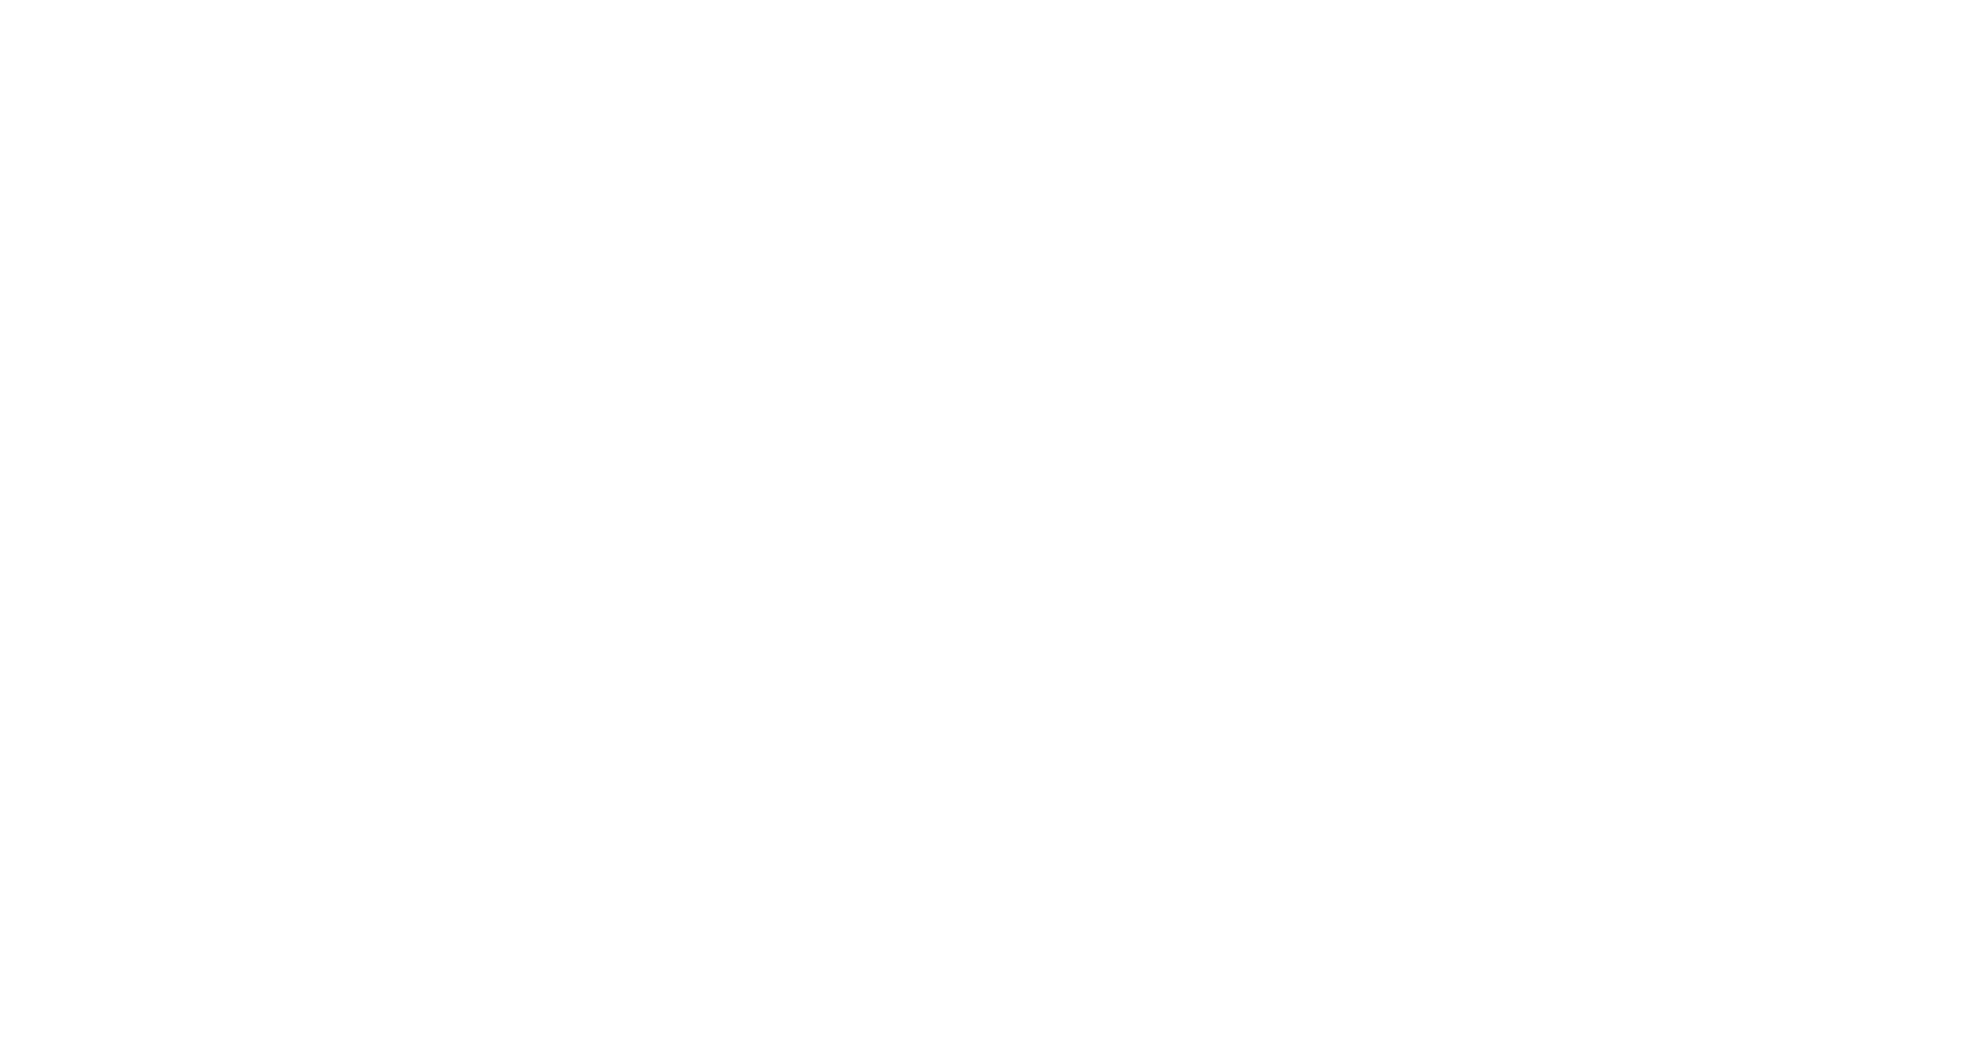 PHP logosu